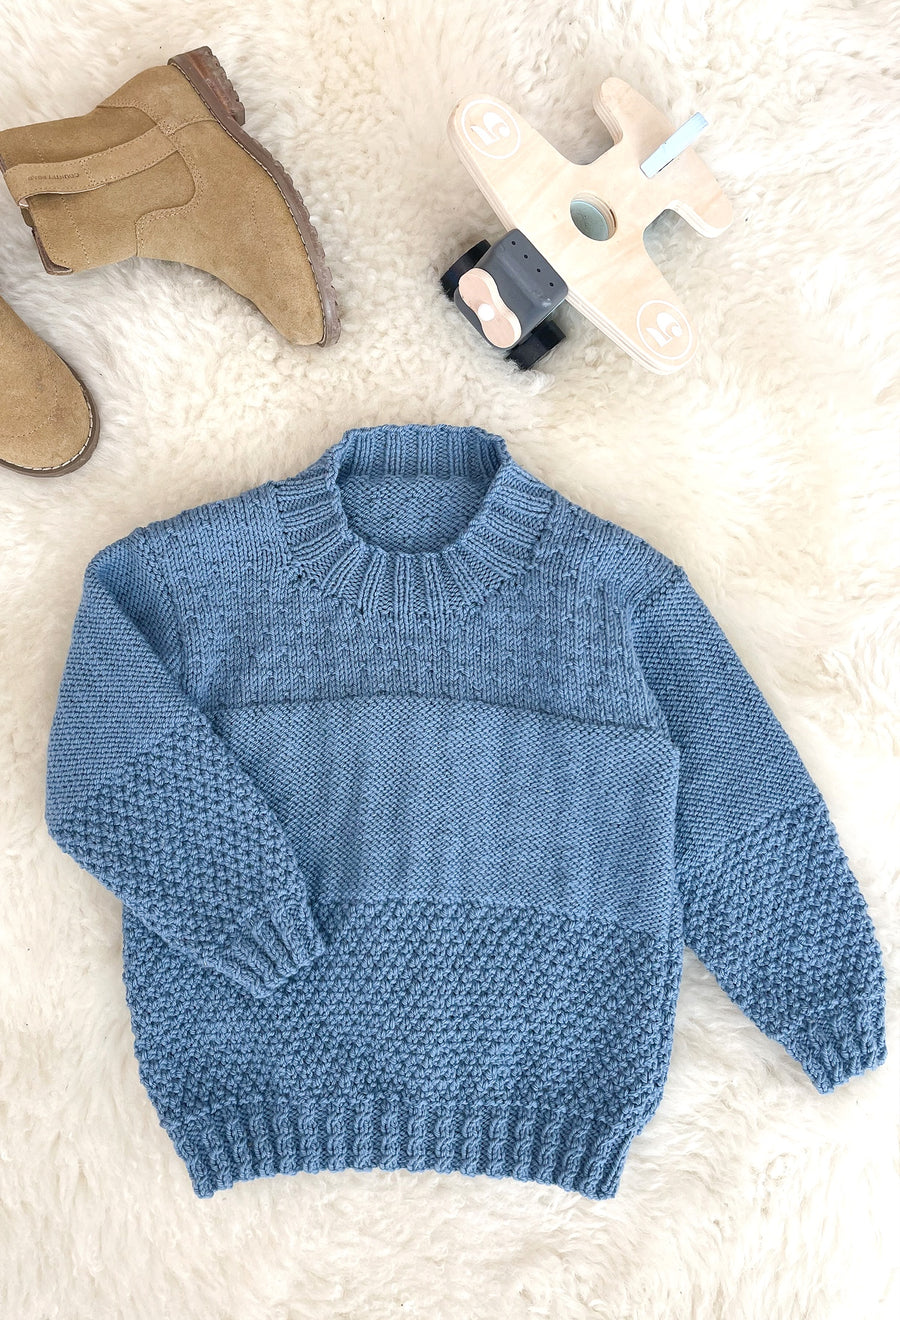 Marzipan Twist Sweater Knitting Pattern